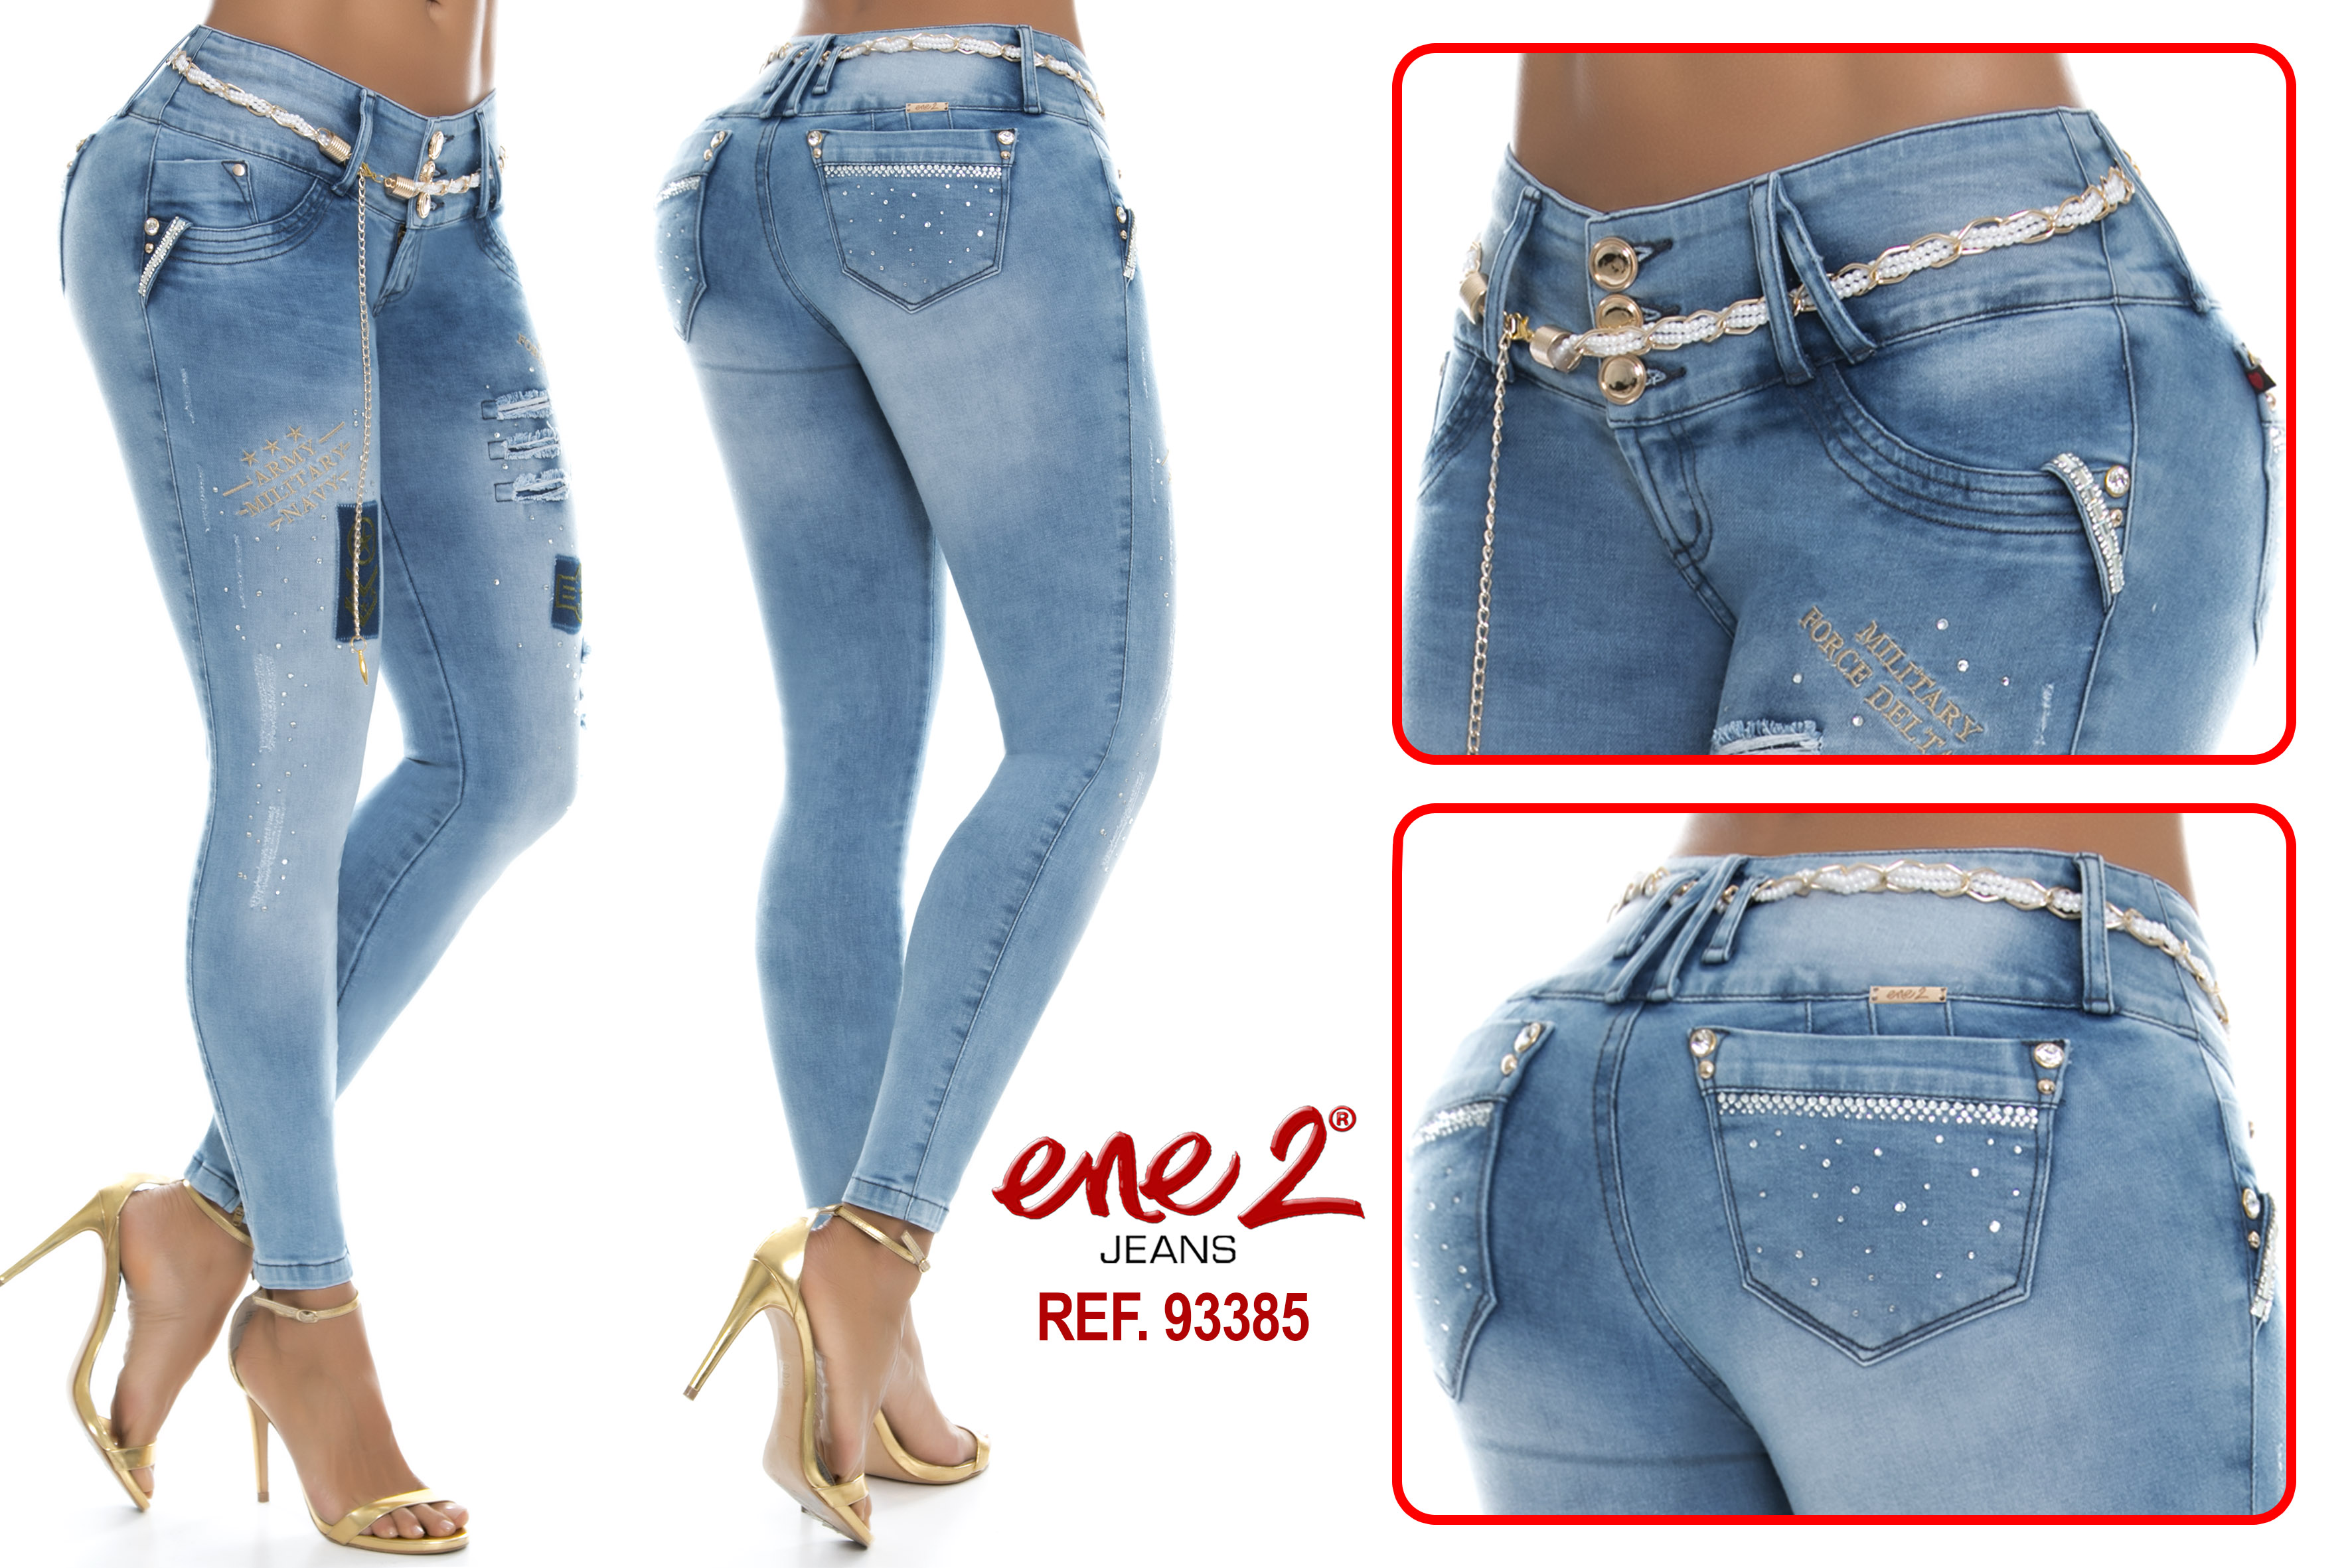 Jeans archivos - Ropa y Moda Colombiana.